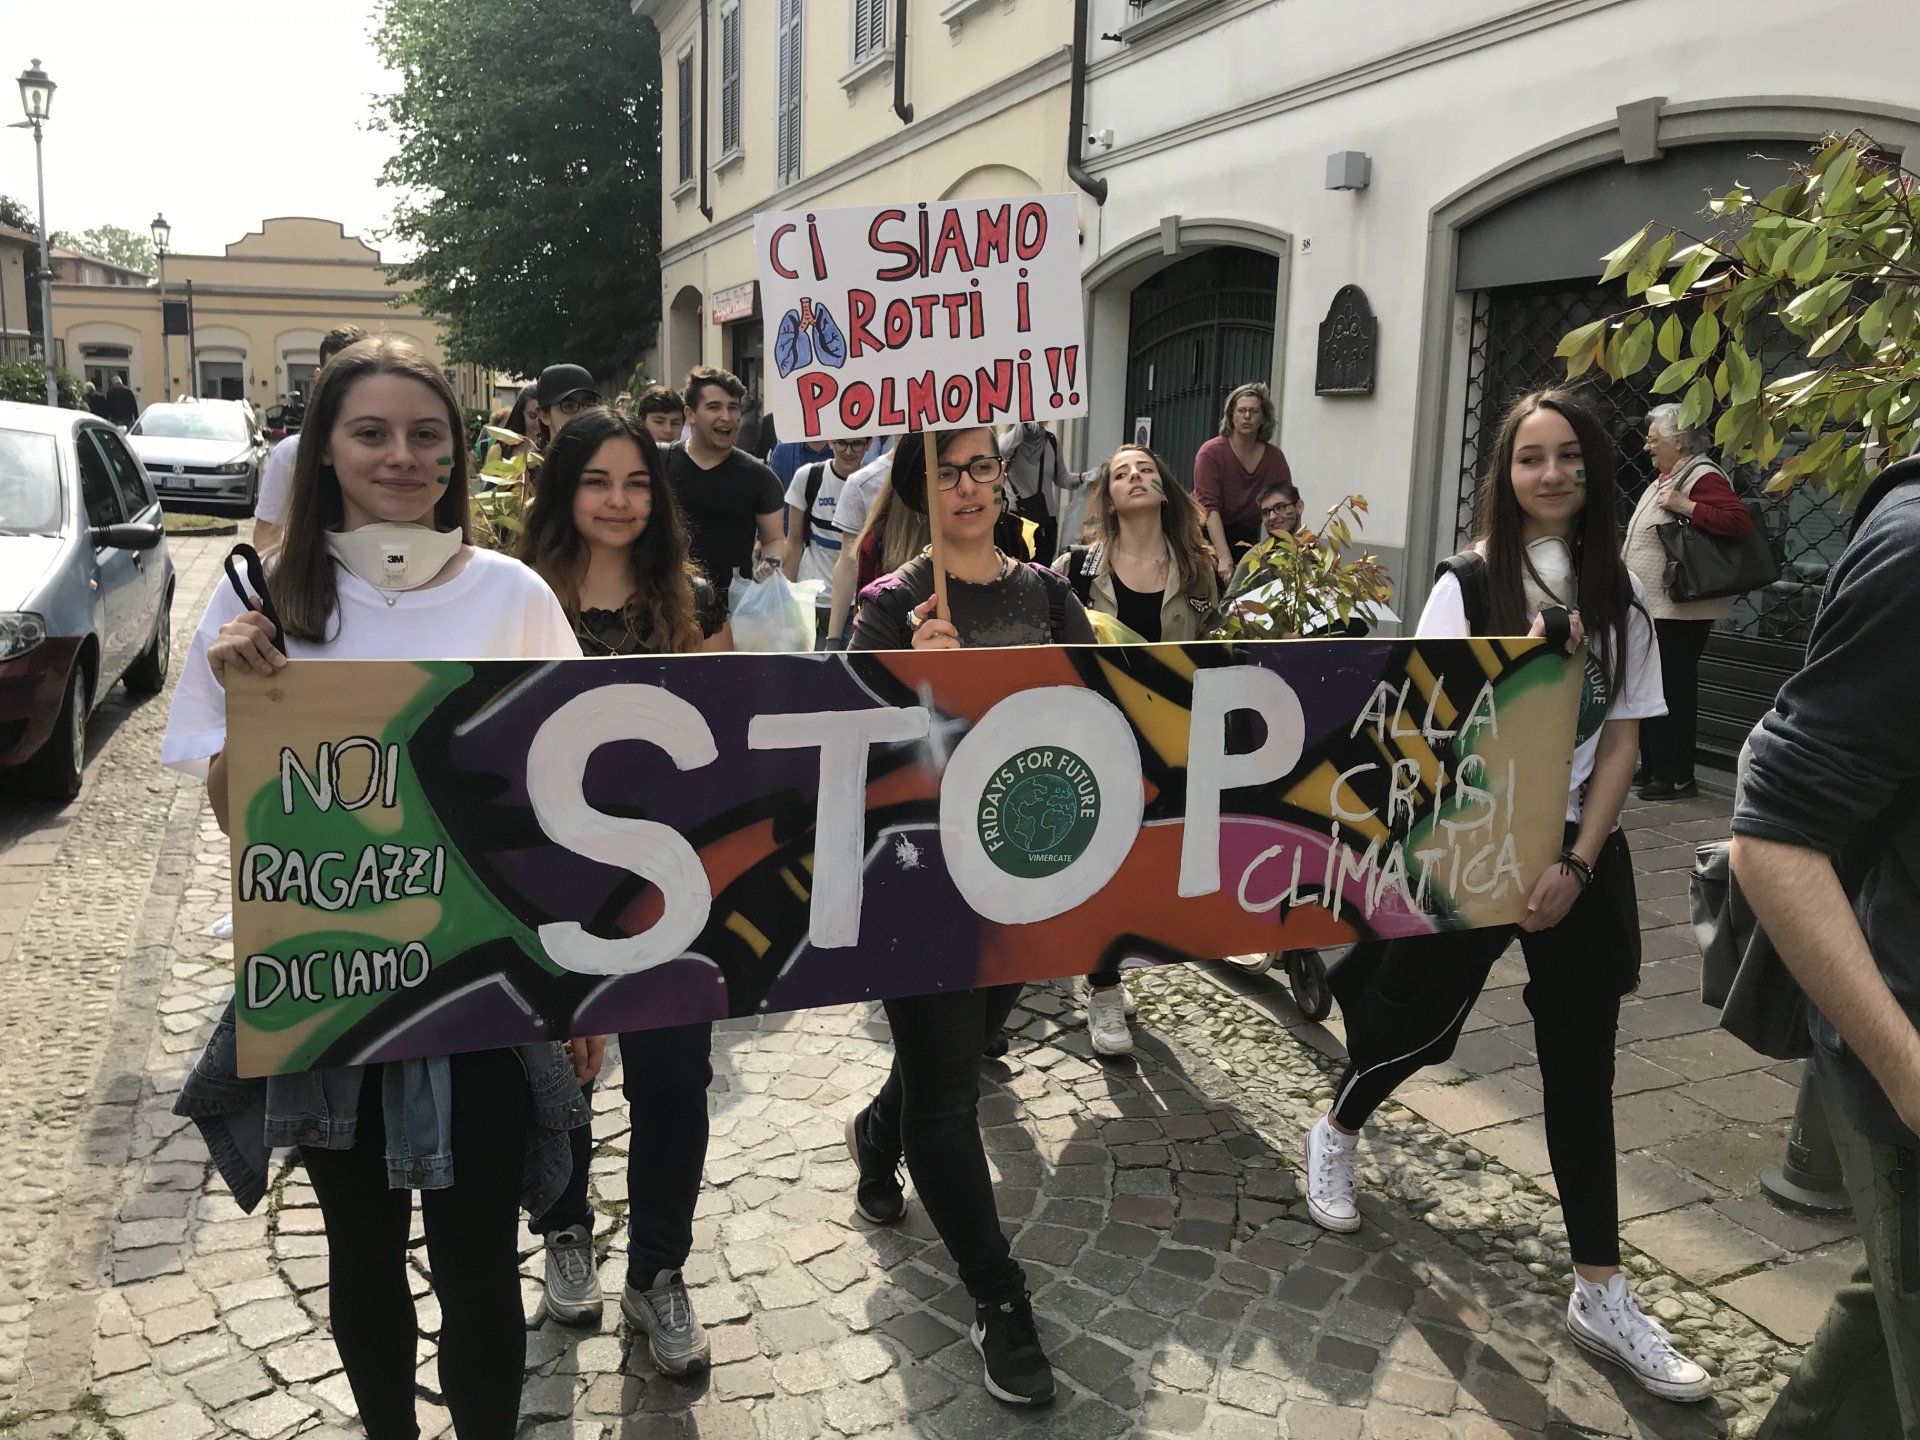 Vimercate marcia studenti Omnicomprensivo per ambiente e clima